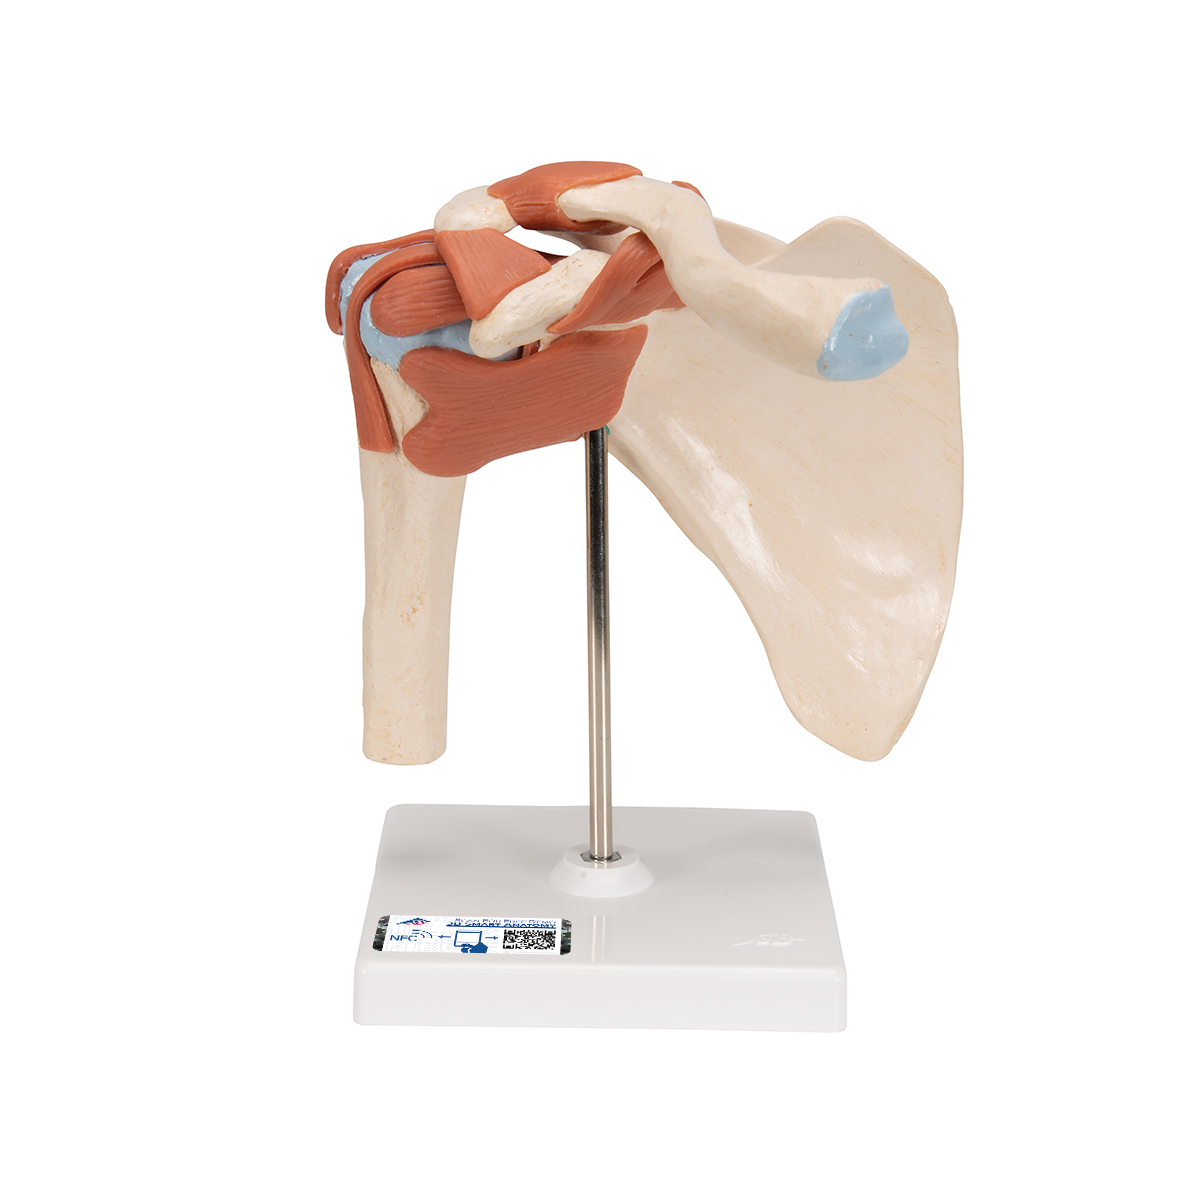 Funktionales Schultergelenkmodell "Luxus" mit Bändern - 3B Smart Anatomy, Bestellnummer 1000160, A80/1, 3B Scientific